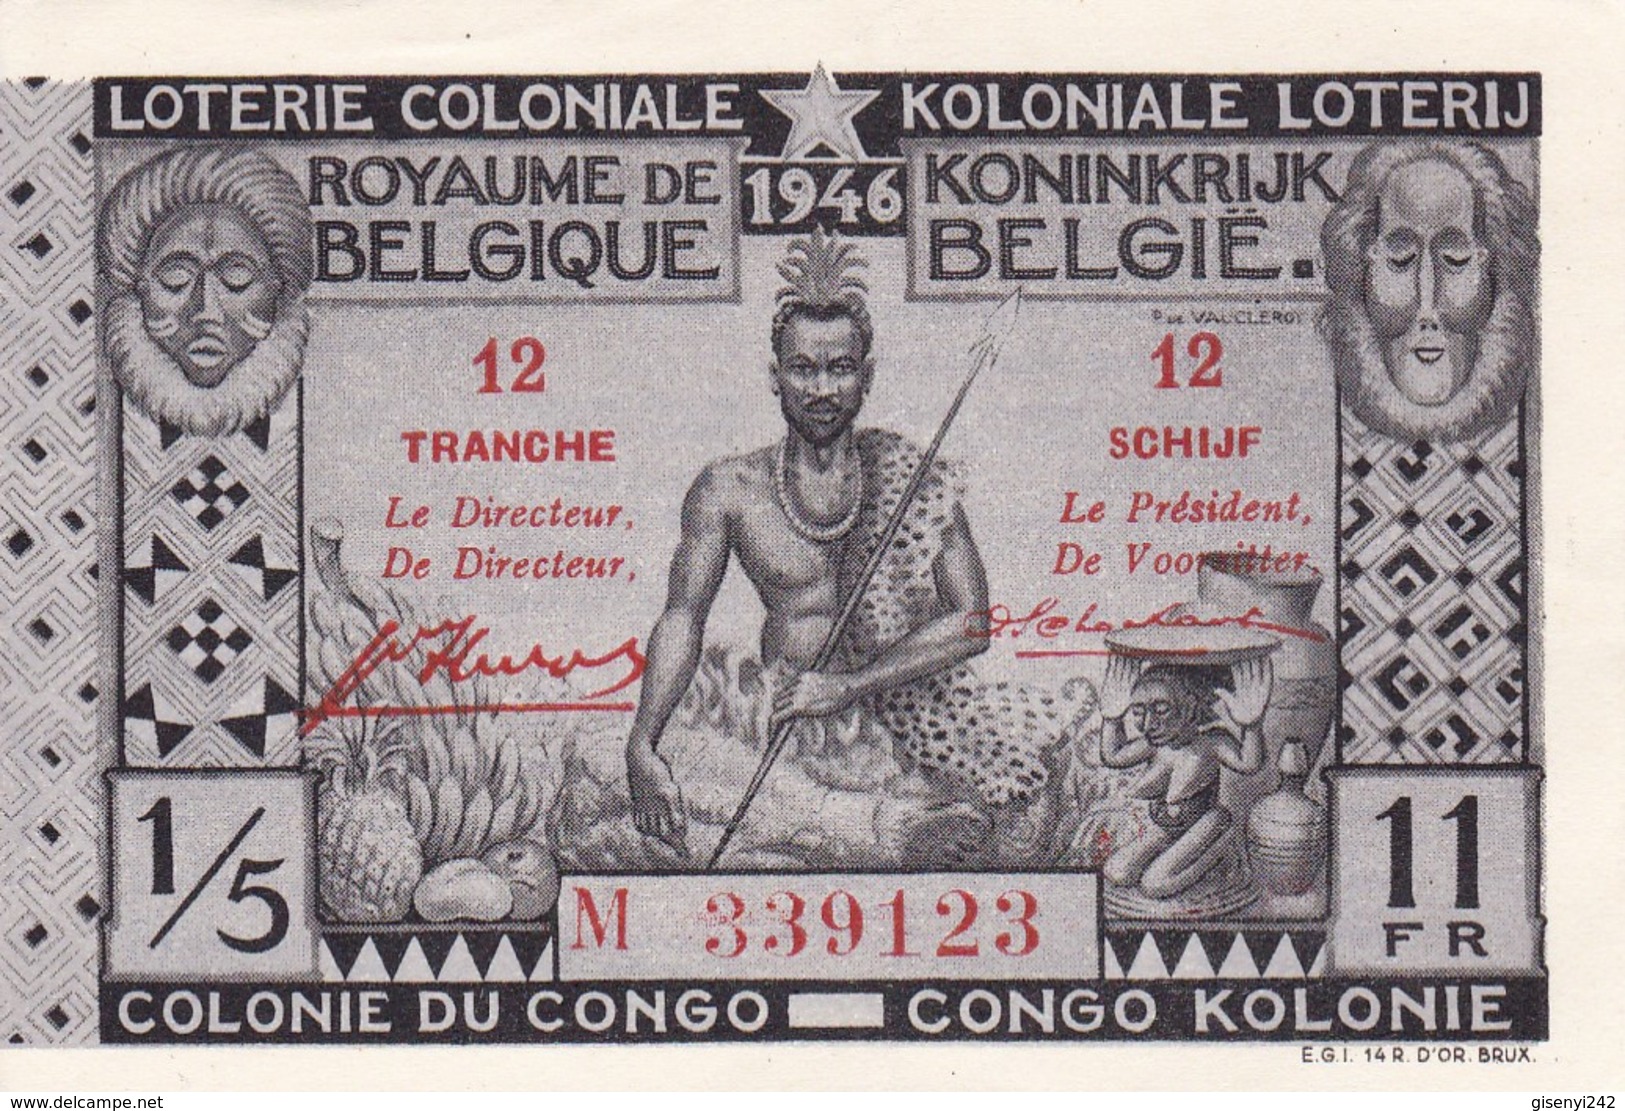 Loterie Coloniale - Koloniale Loterij 1946 - Tranche 12 Schijf - Billets De Loterie